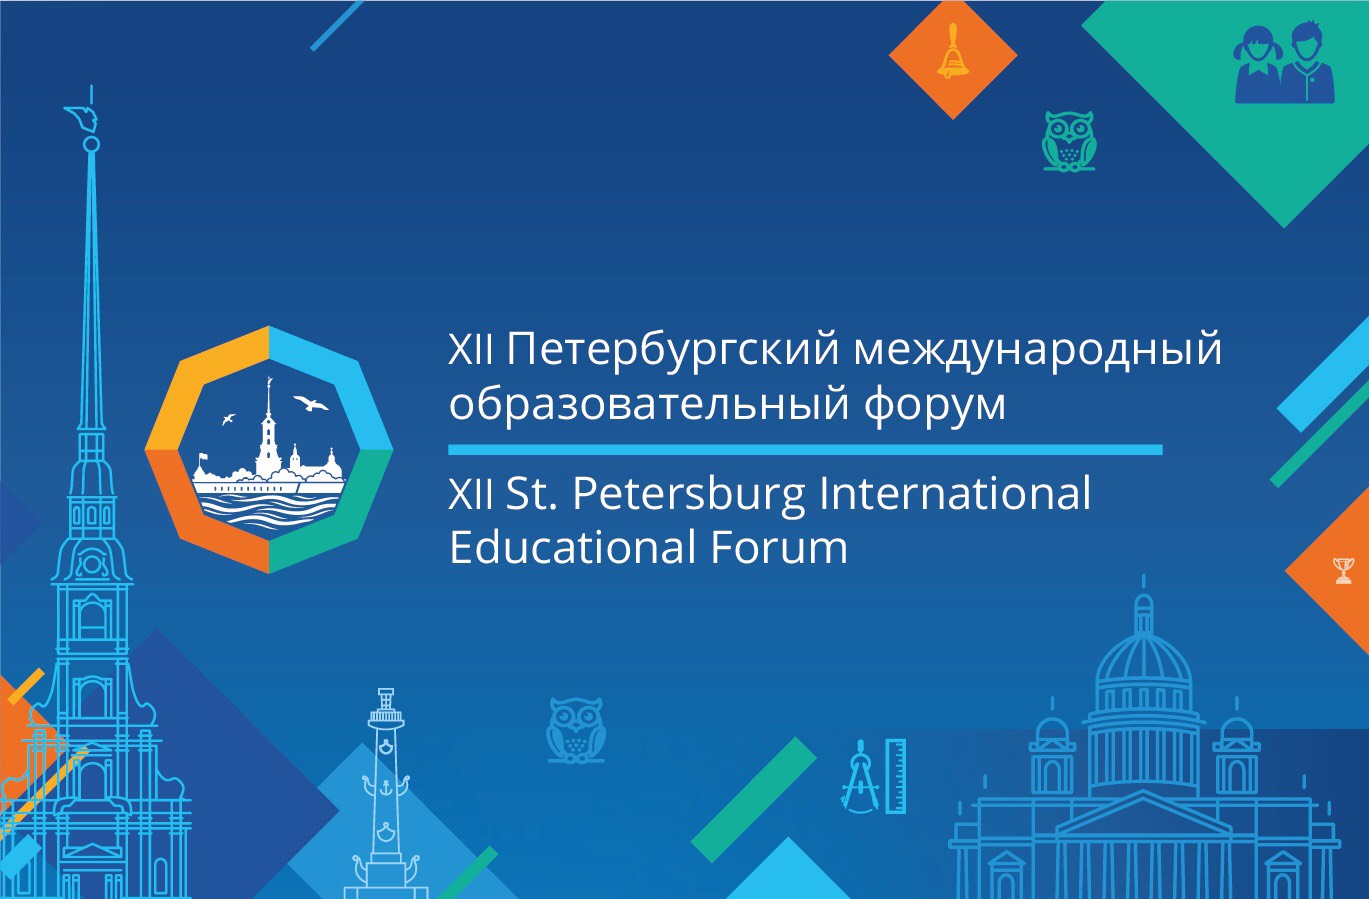 Культурно-досуговый центр "Подвиг" принимает участников XII Петербургского международного образовательного форума.